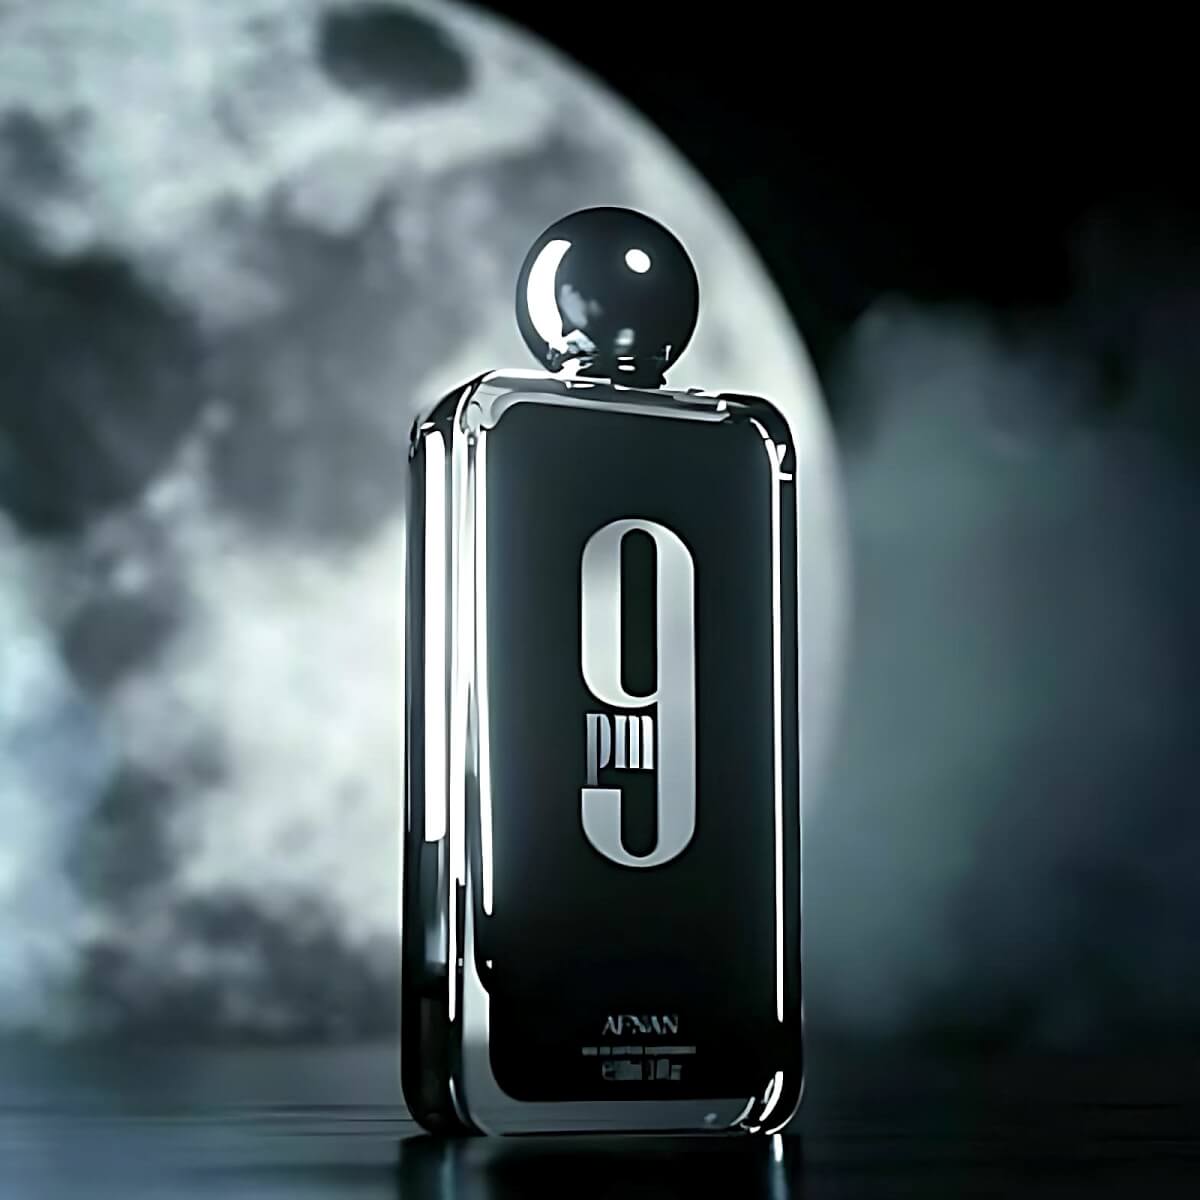 9Pm Perfume Eau De Parfum 100Ml By Afnan (Inspired By Jean Paul Gaultier Ultra Male)